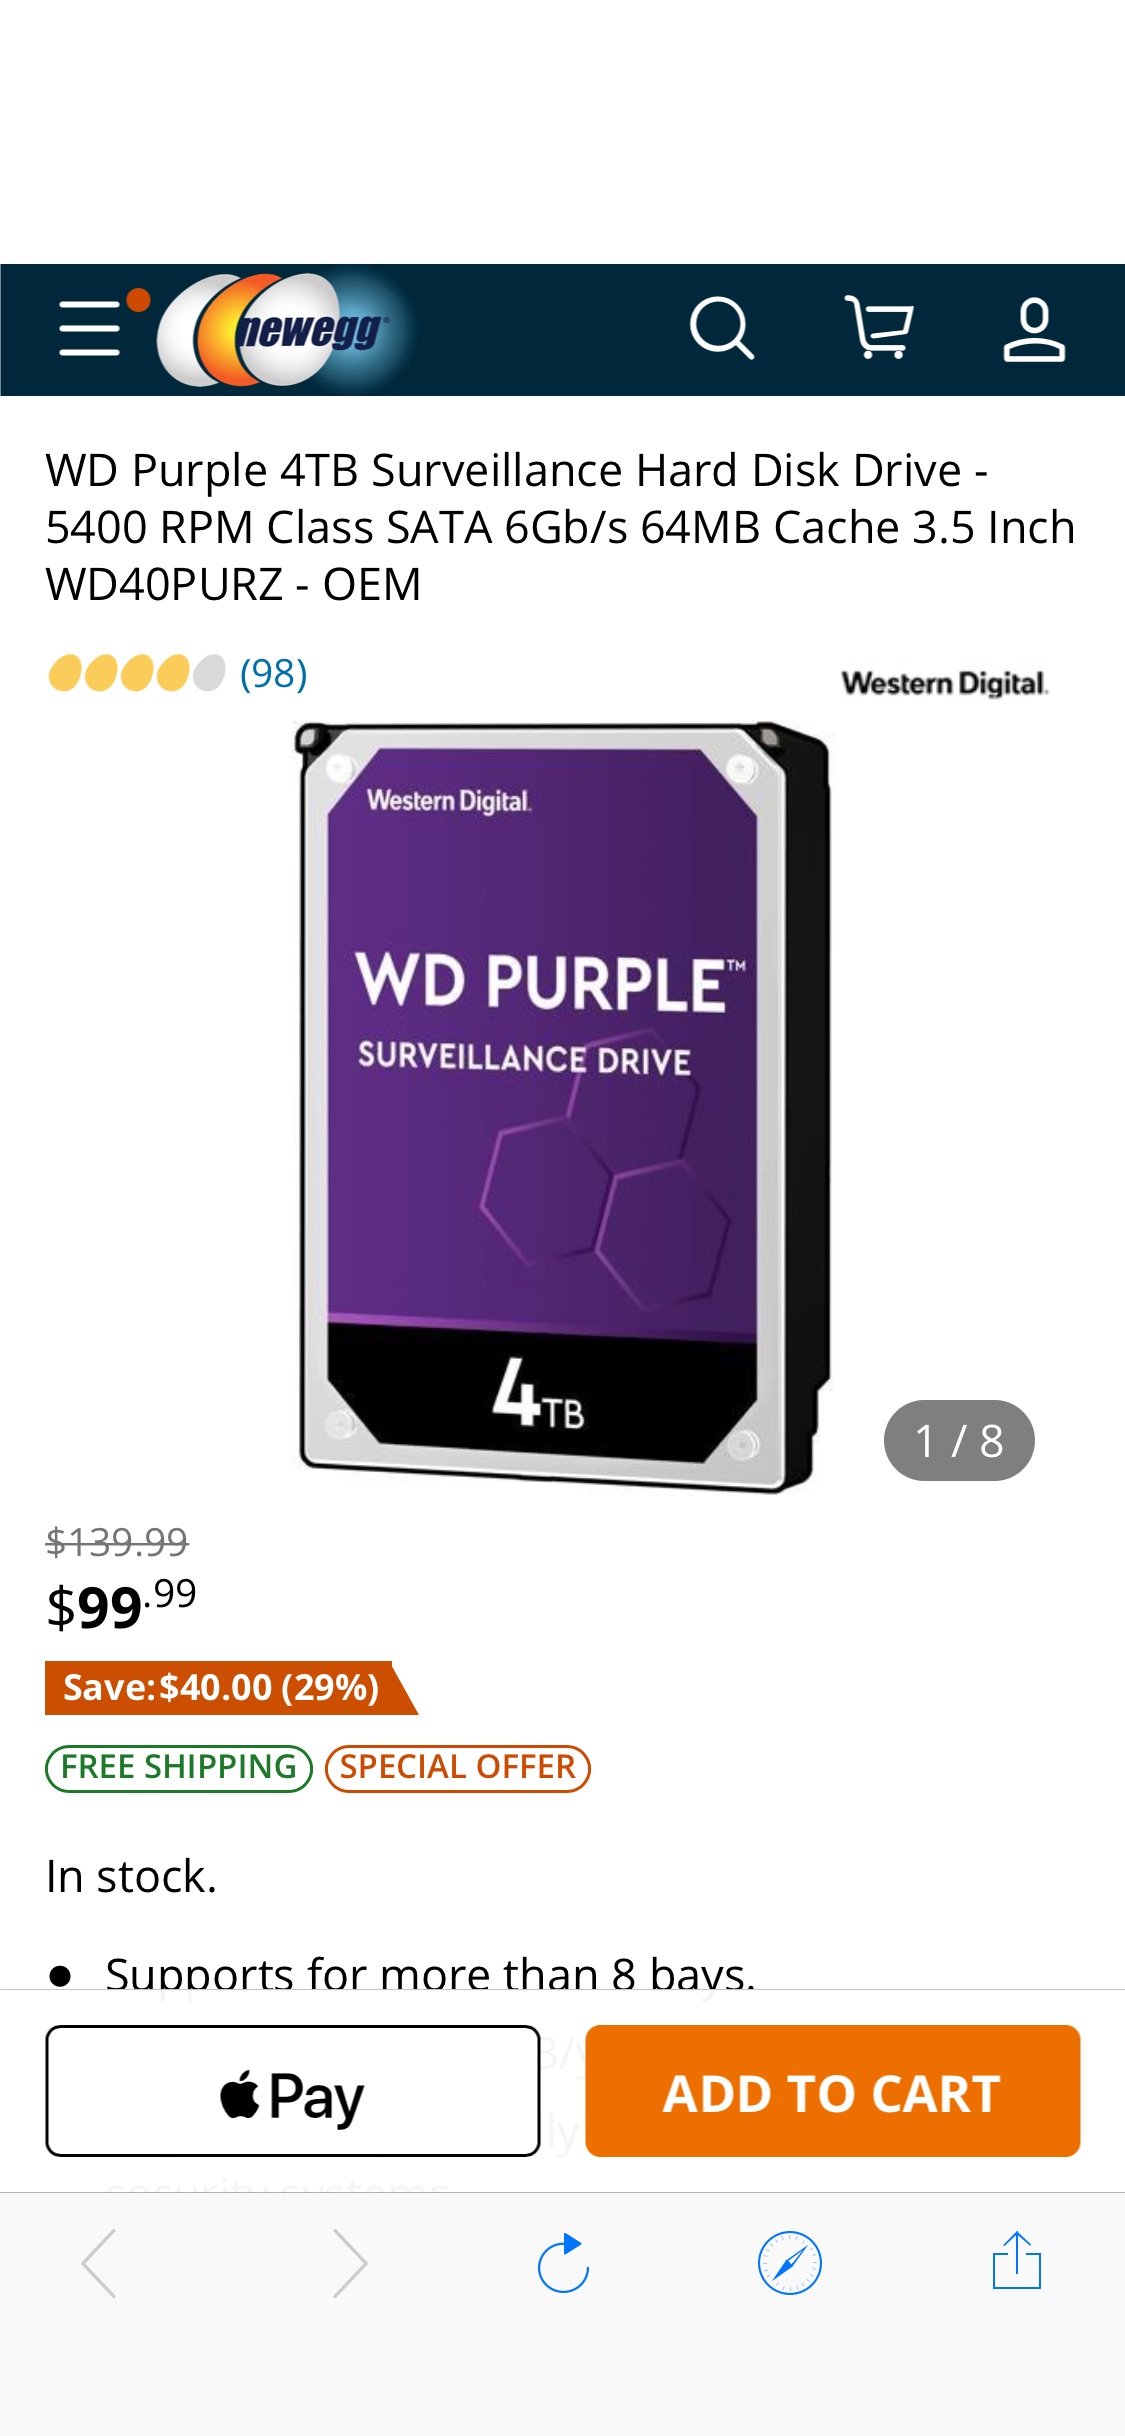 WD Purple 4TB Surveillance Hard Disk Drive - 5400 RPM Class SATA 6Gb/s 64MB Cache 3.5 Inch WD40PURZ - Newegg.com硬盘